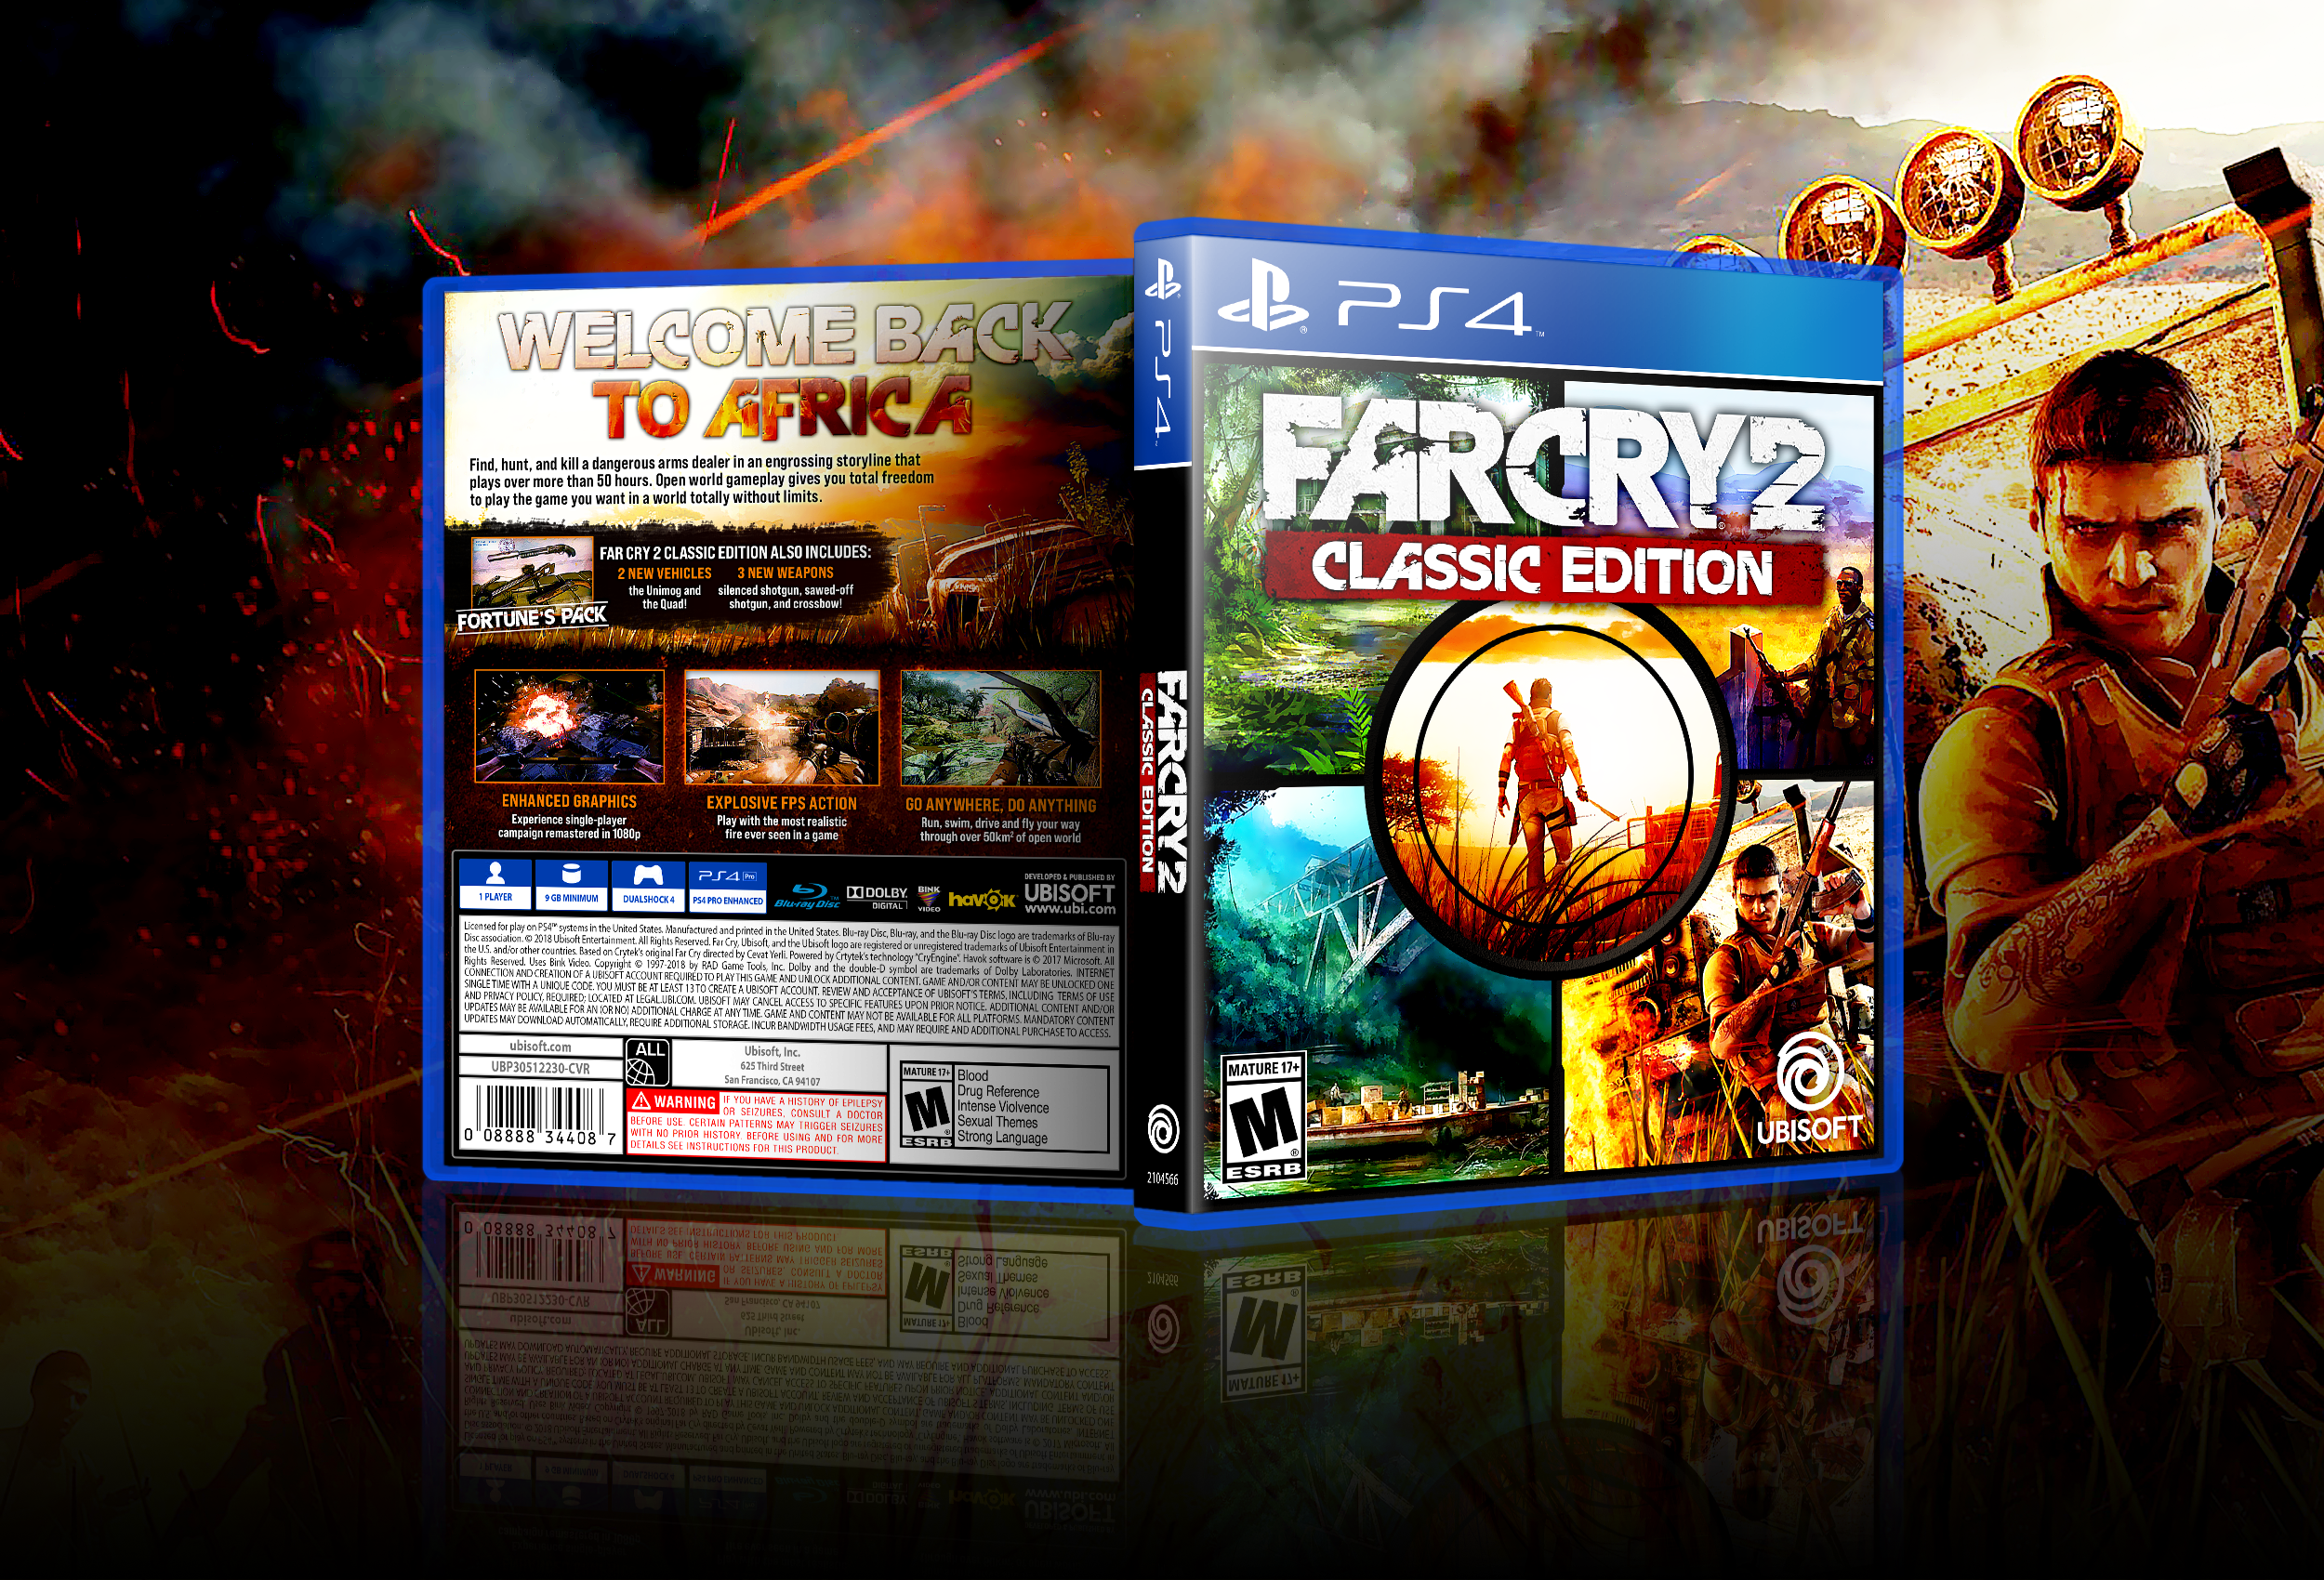 FarCry 2: Classic Edition box cover